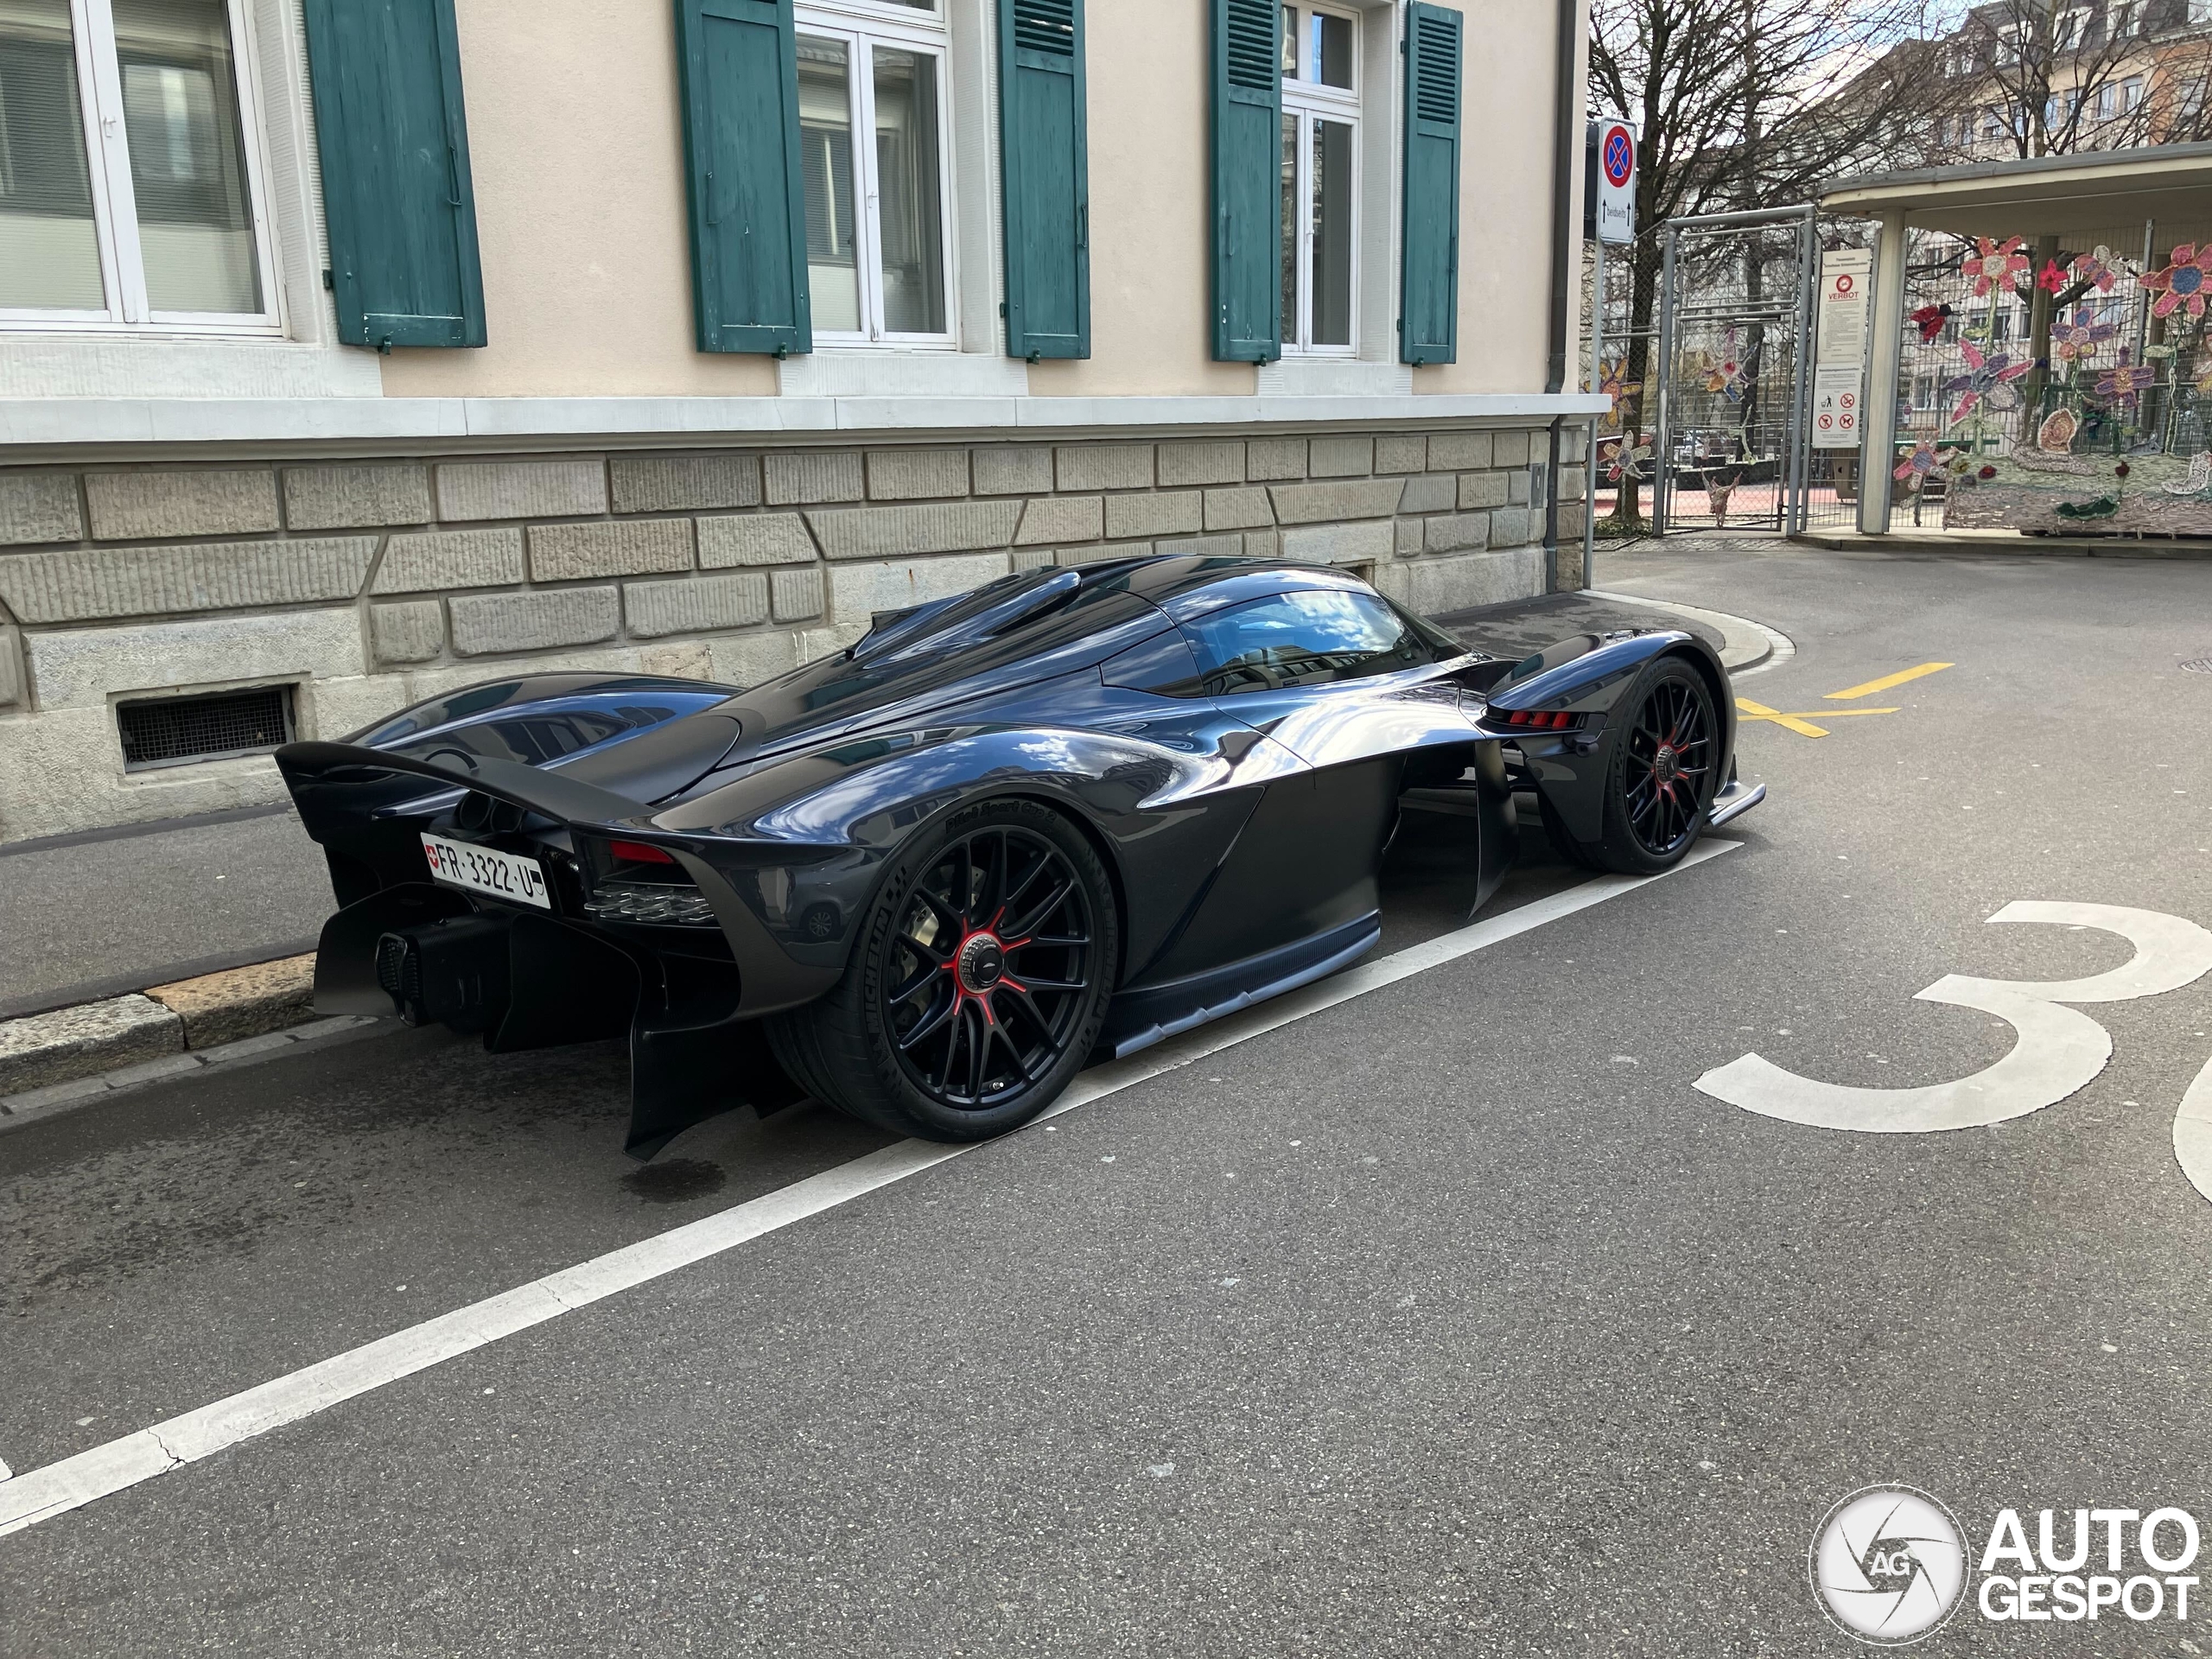 An Aston Martin Valkyrie shows up in Zurich